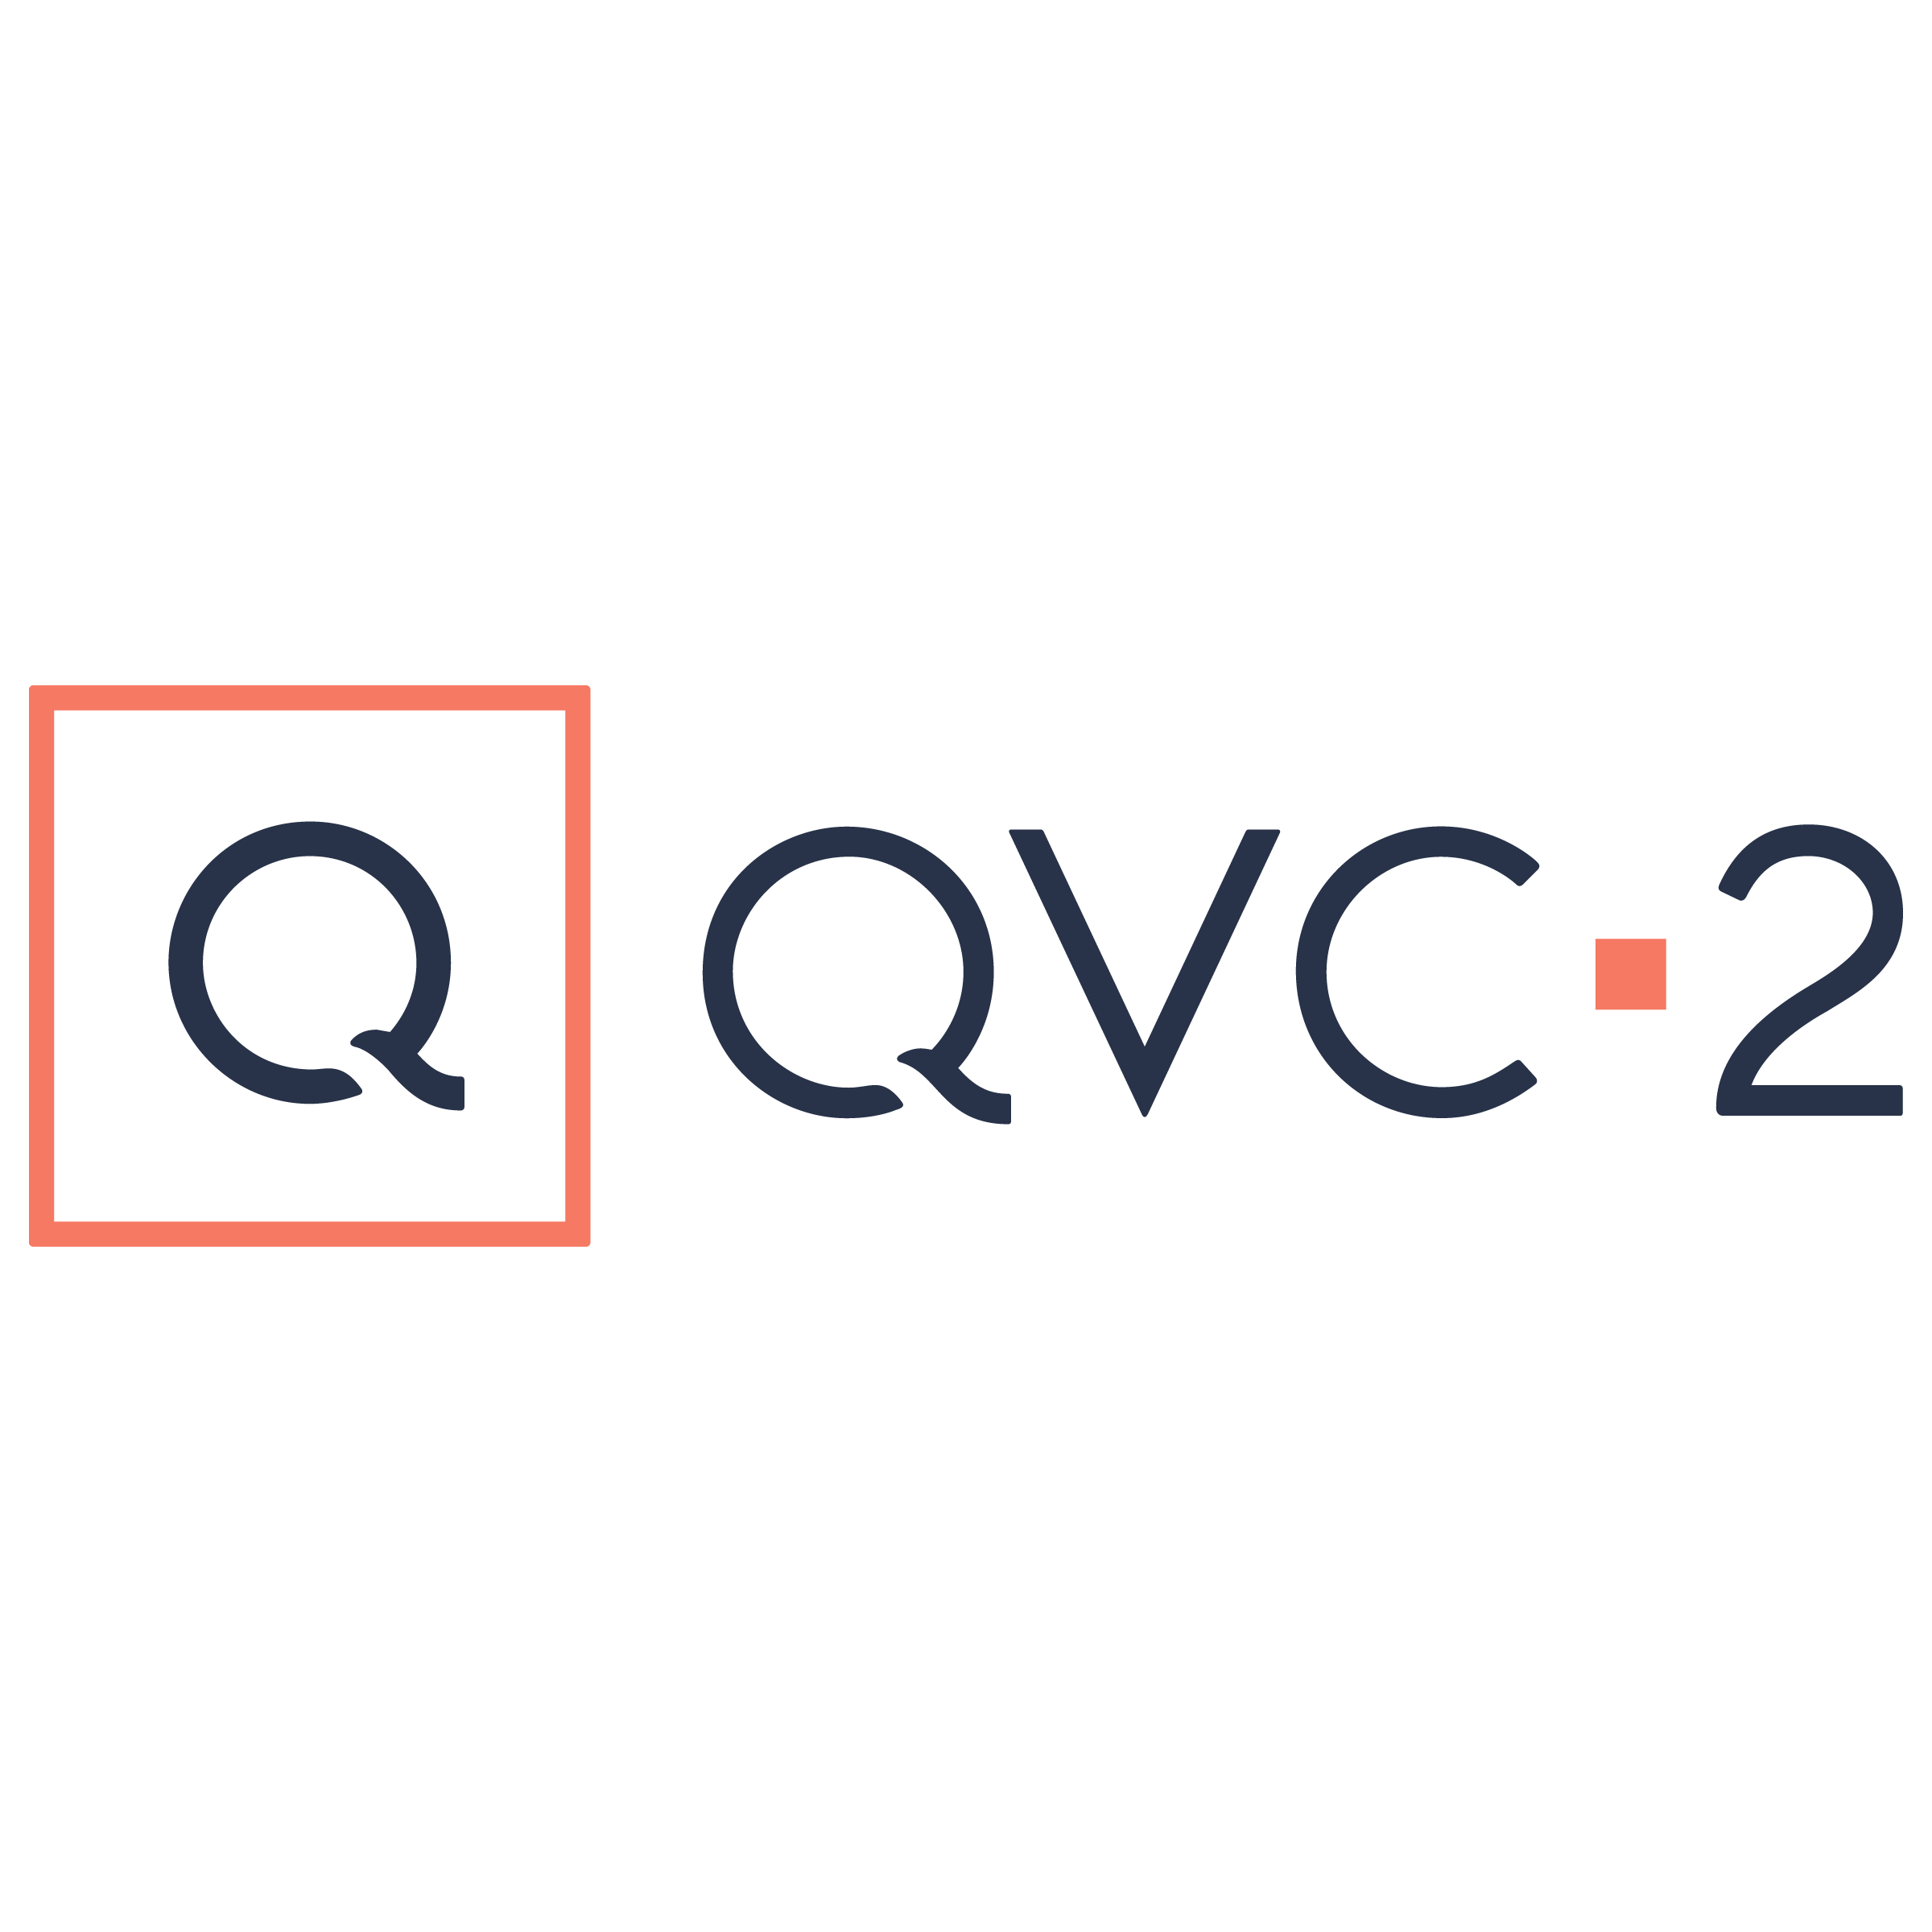 QVC2 Logo